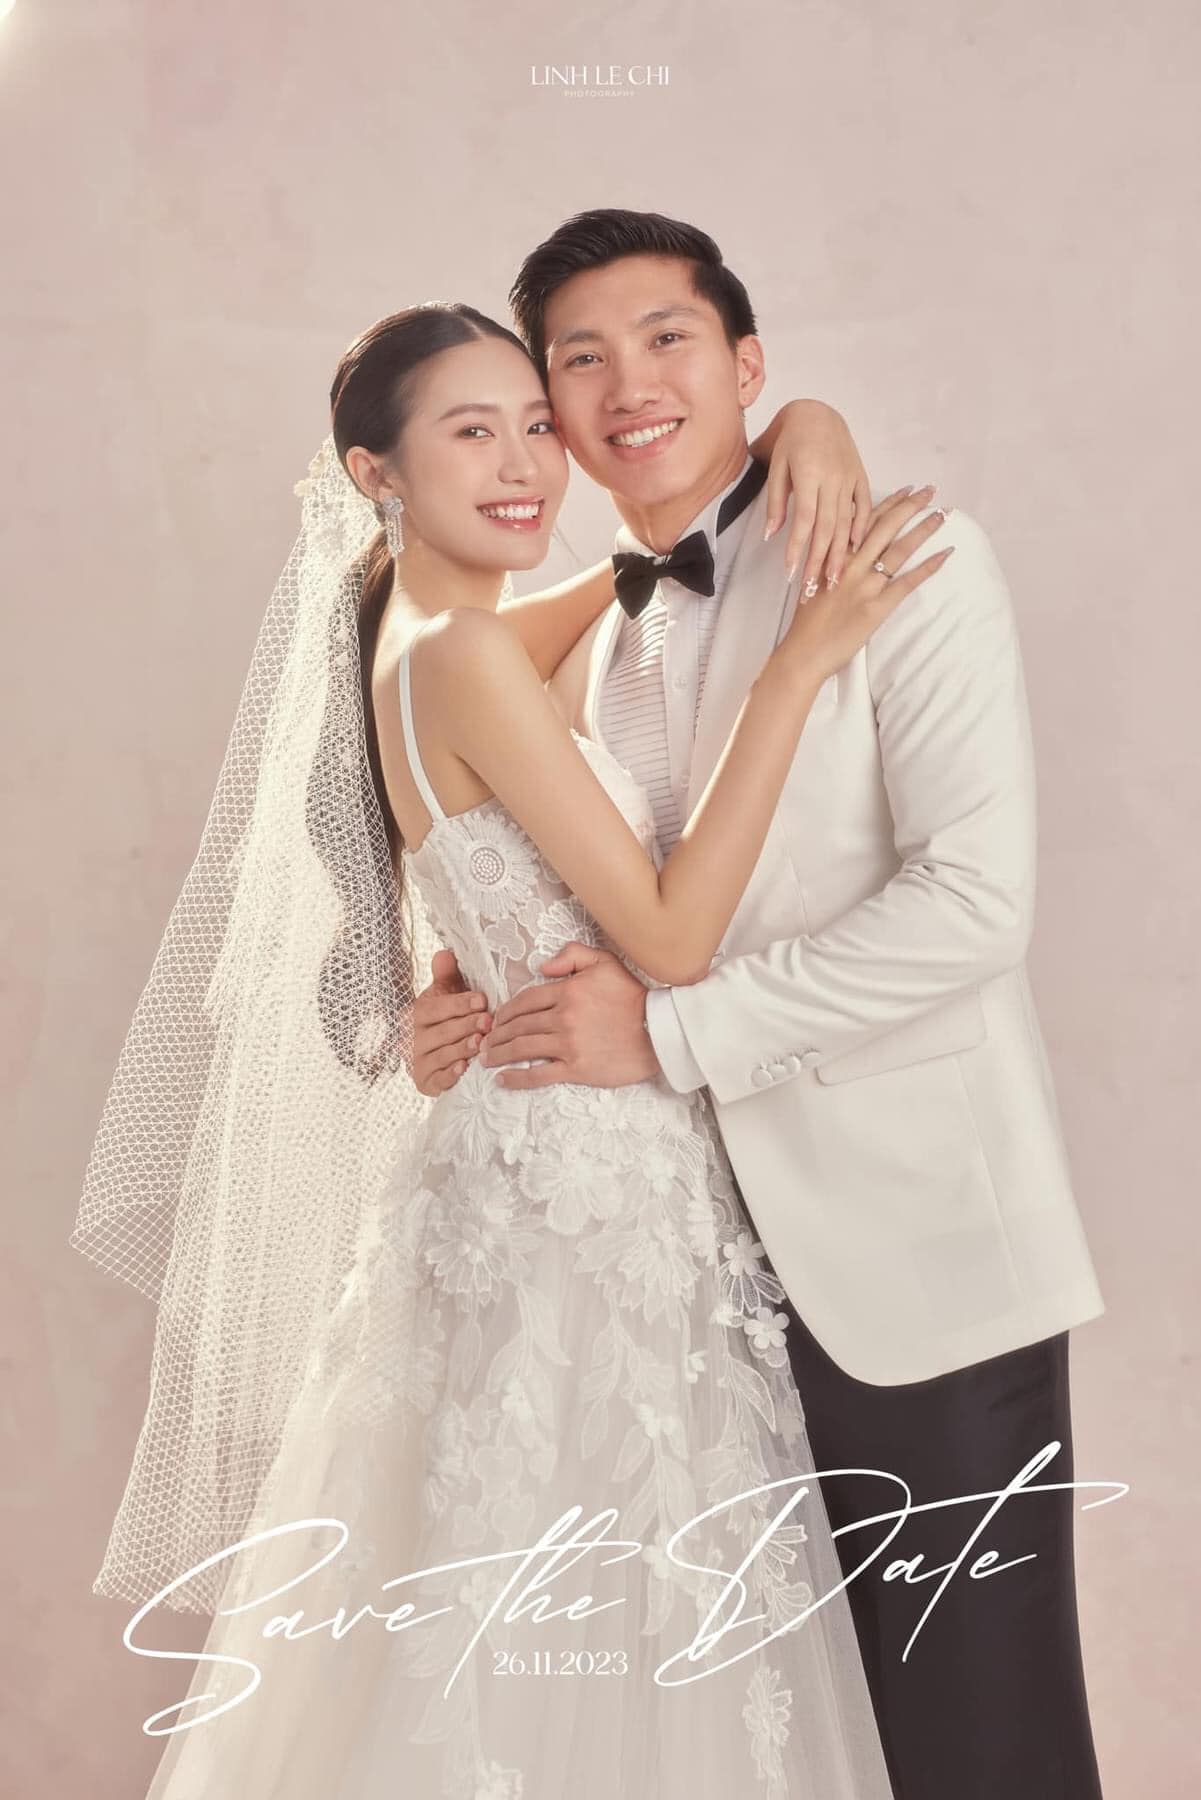 Dàn khách mời 'khủng' dự đám cưới ở Hà Nội của Đoàn Văn Hậu và Doãn Hải My được netizen dự đoán - ảnh 1